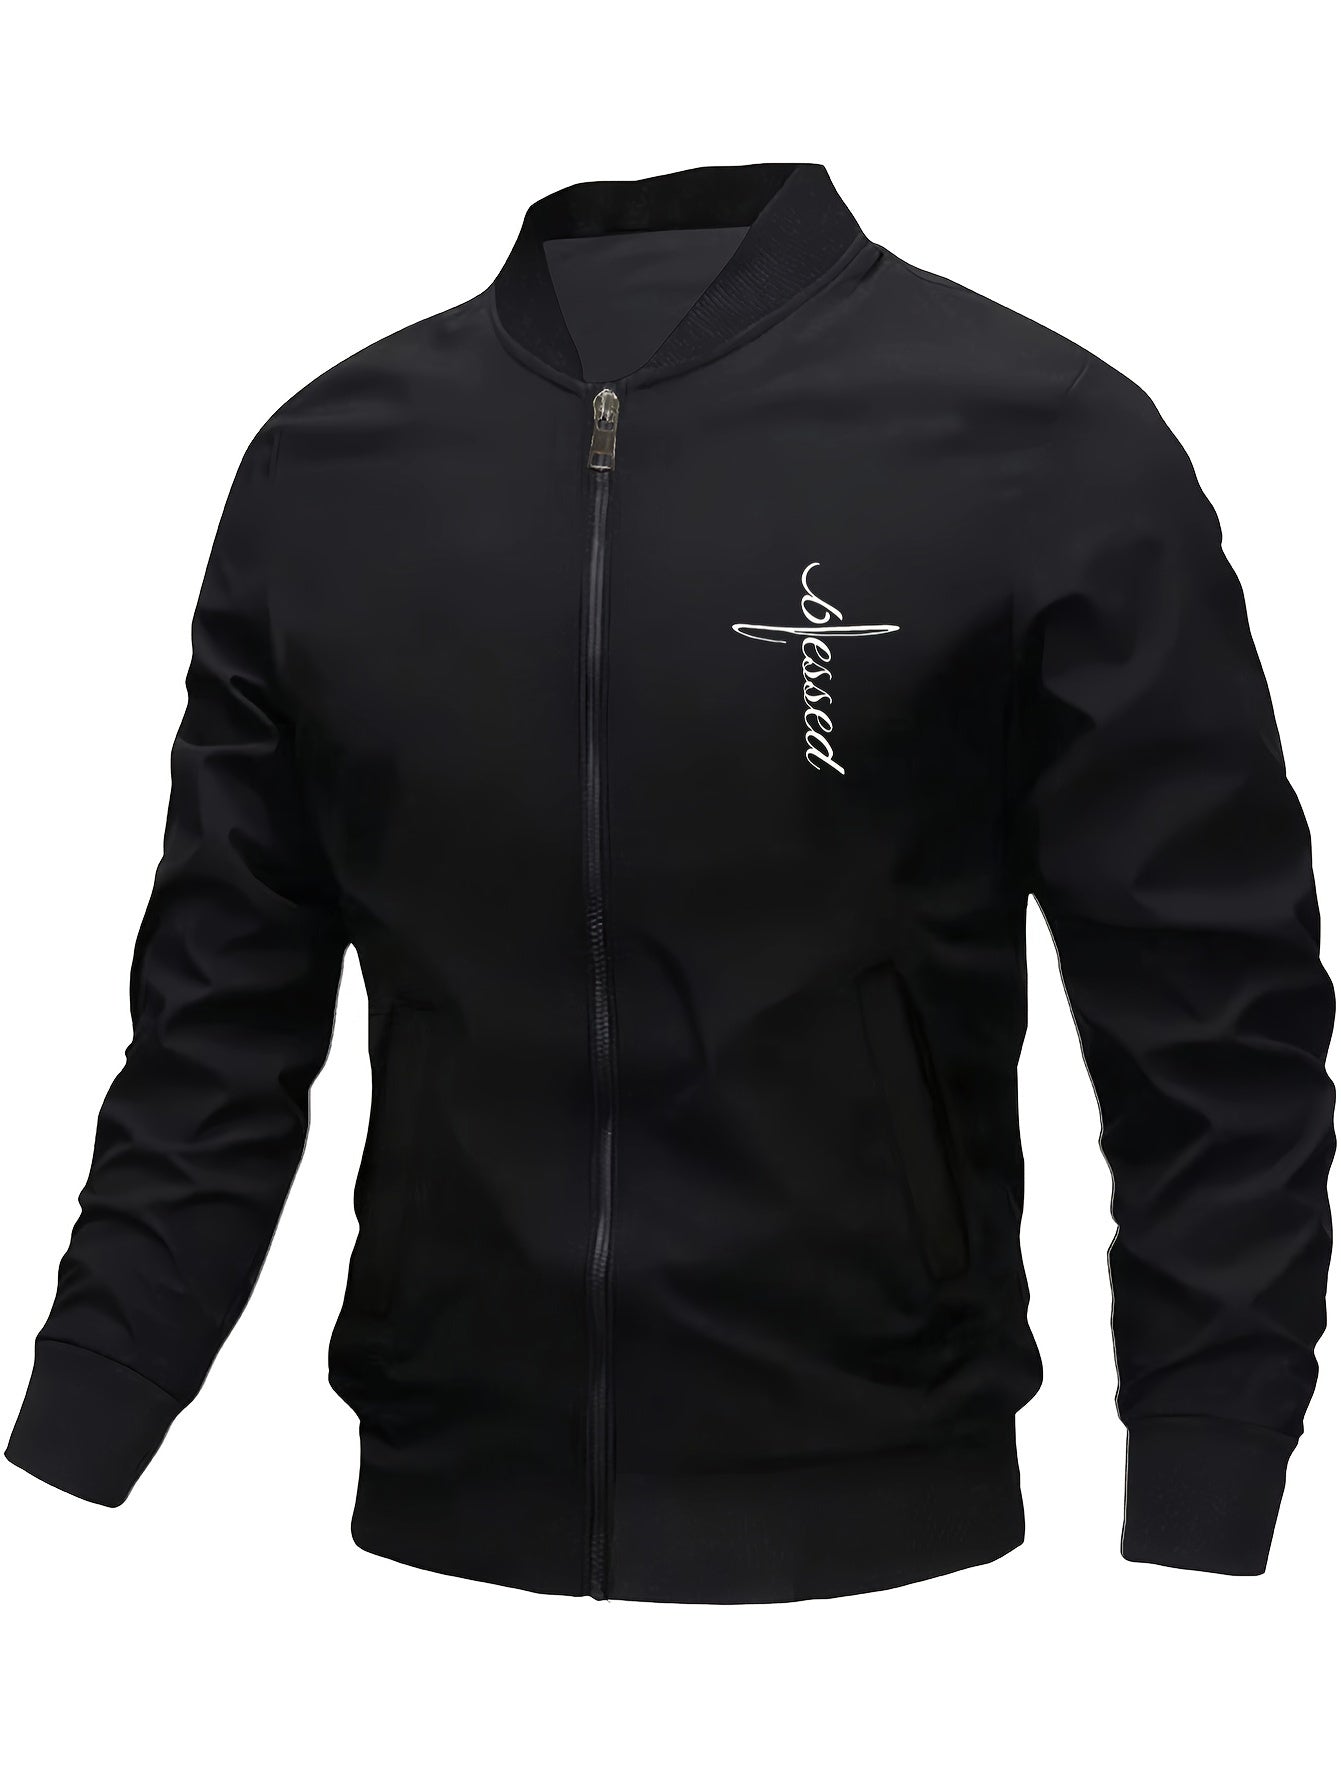 Blessed Men's Christian Jacket claimedbygoddesigns